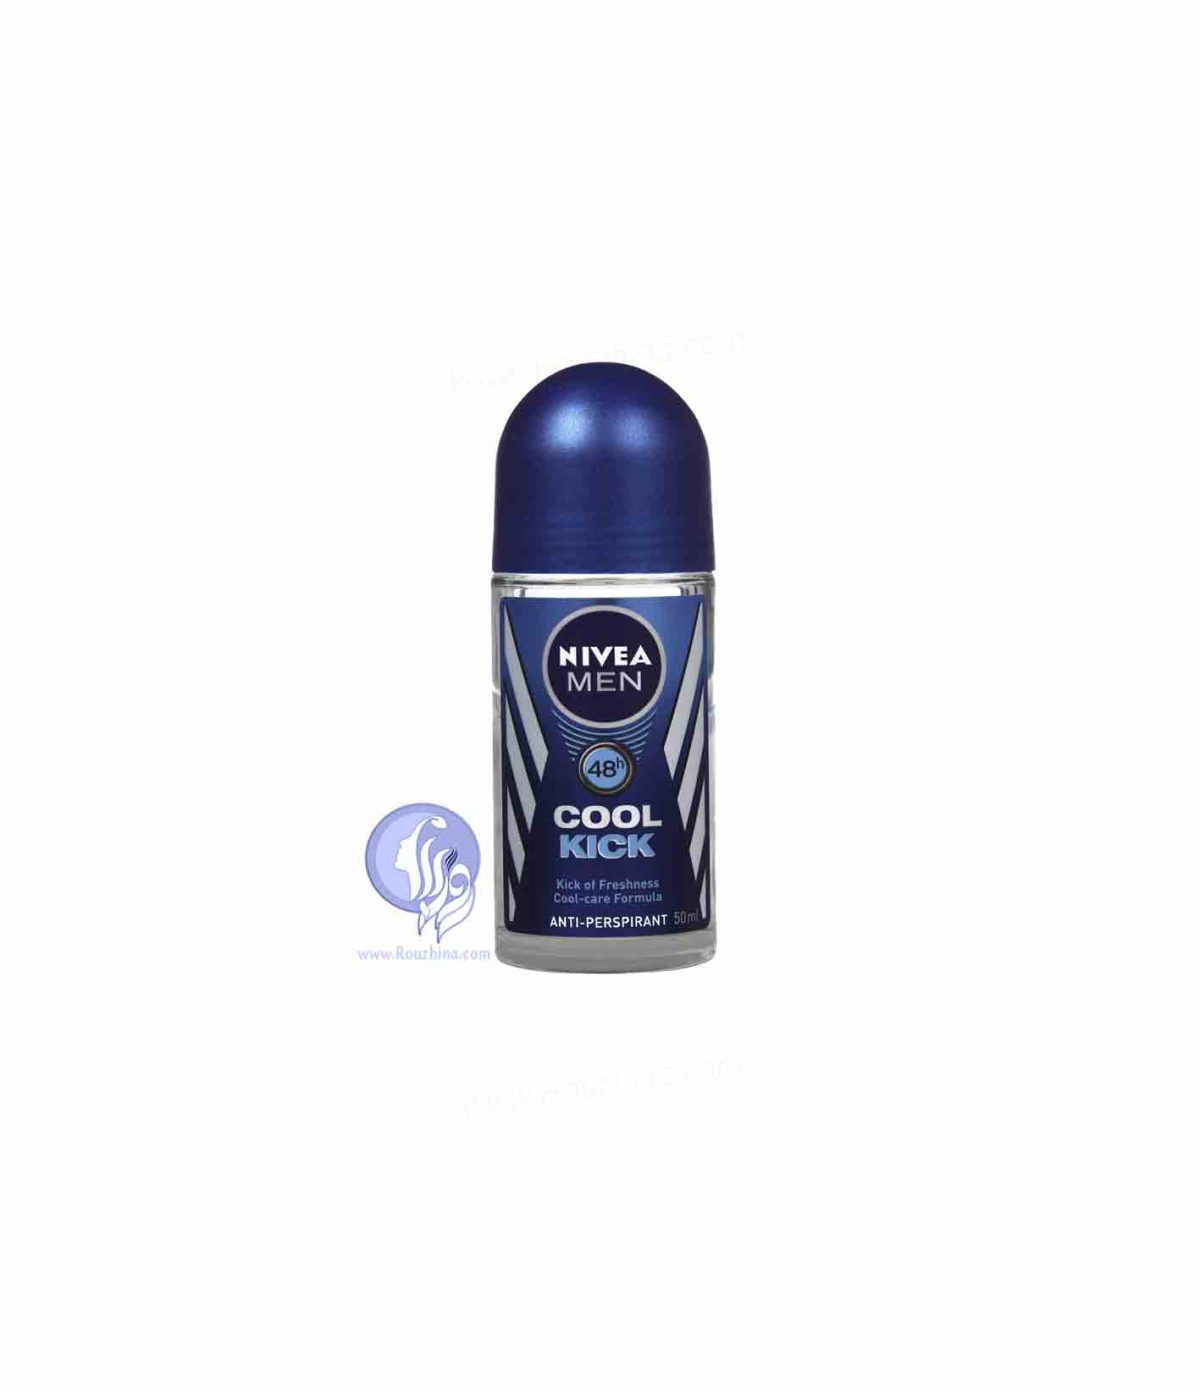 فروش رول ضد تعریق مردانه نیوا Nivea مدل کول کیک Nivea Cool Kick For Men Roll-On Deodorant